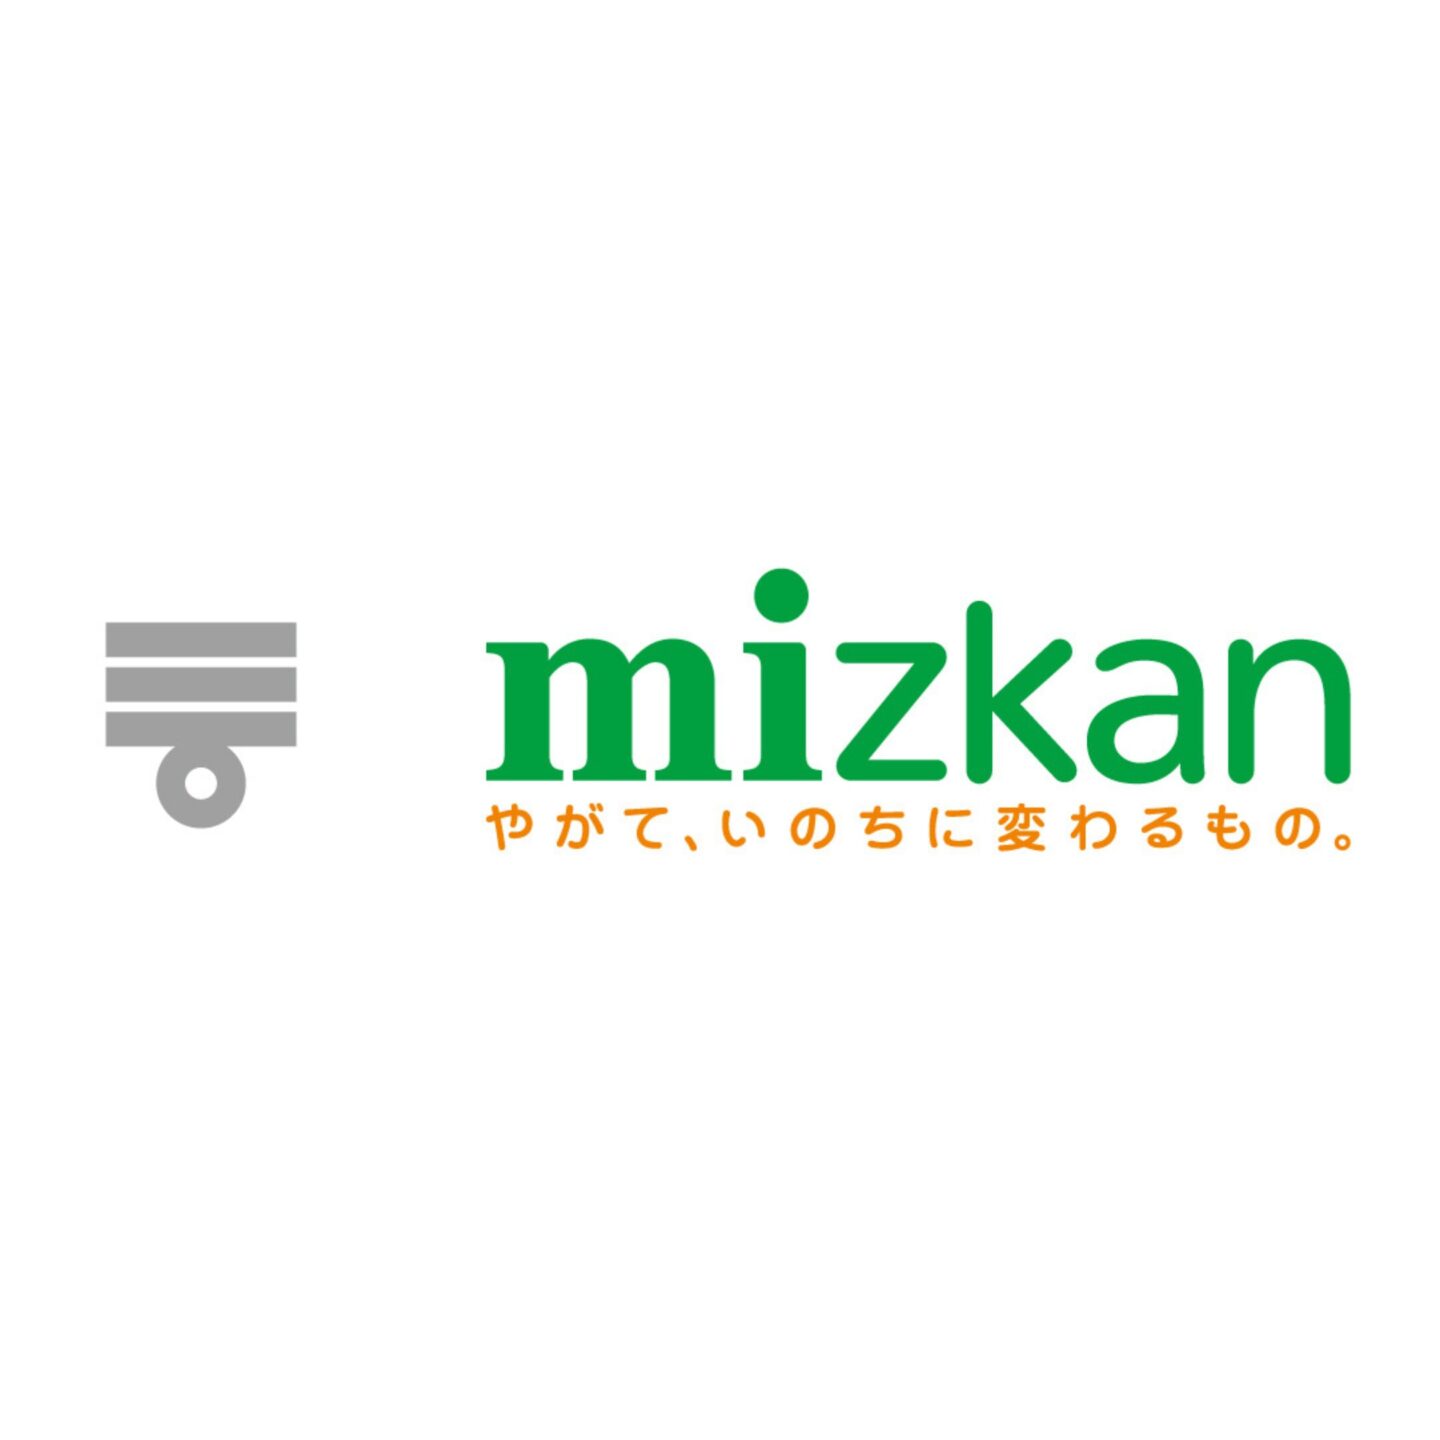 株式会社 Mizkan